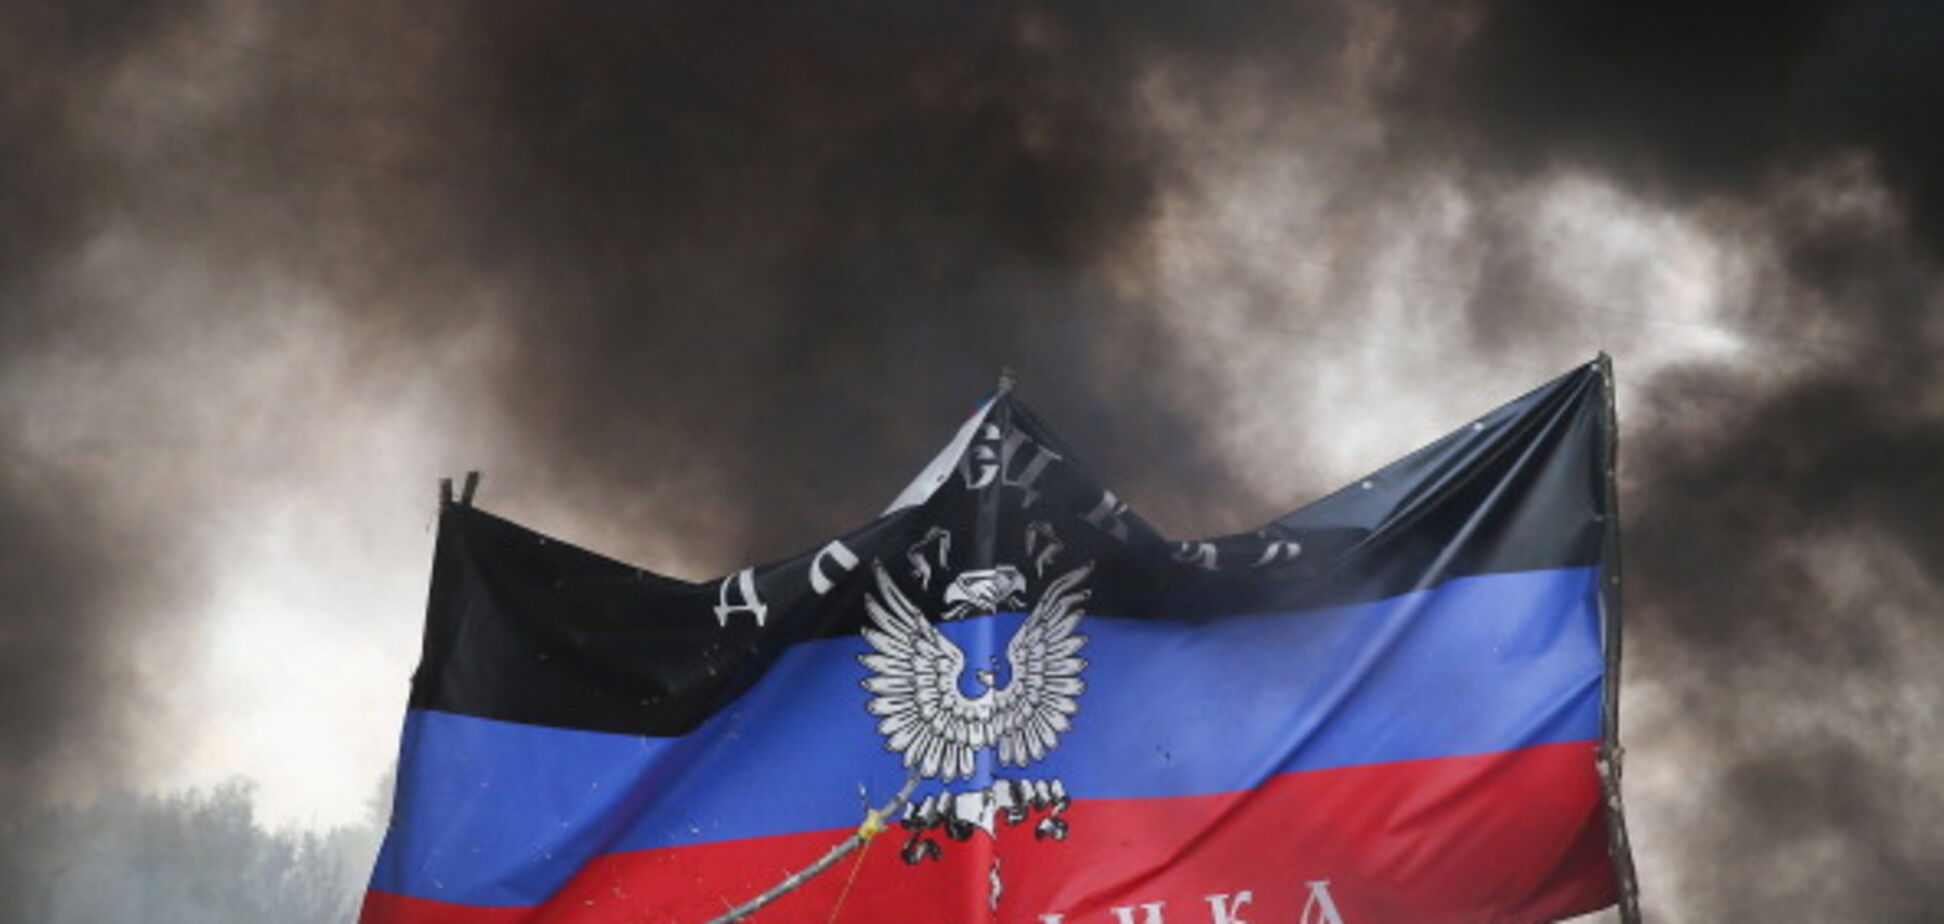  'Новороссия'? Где это?': российский историк рассказал, как озадачить 'колорада'